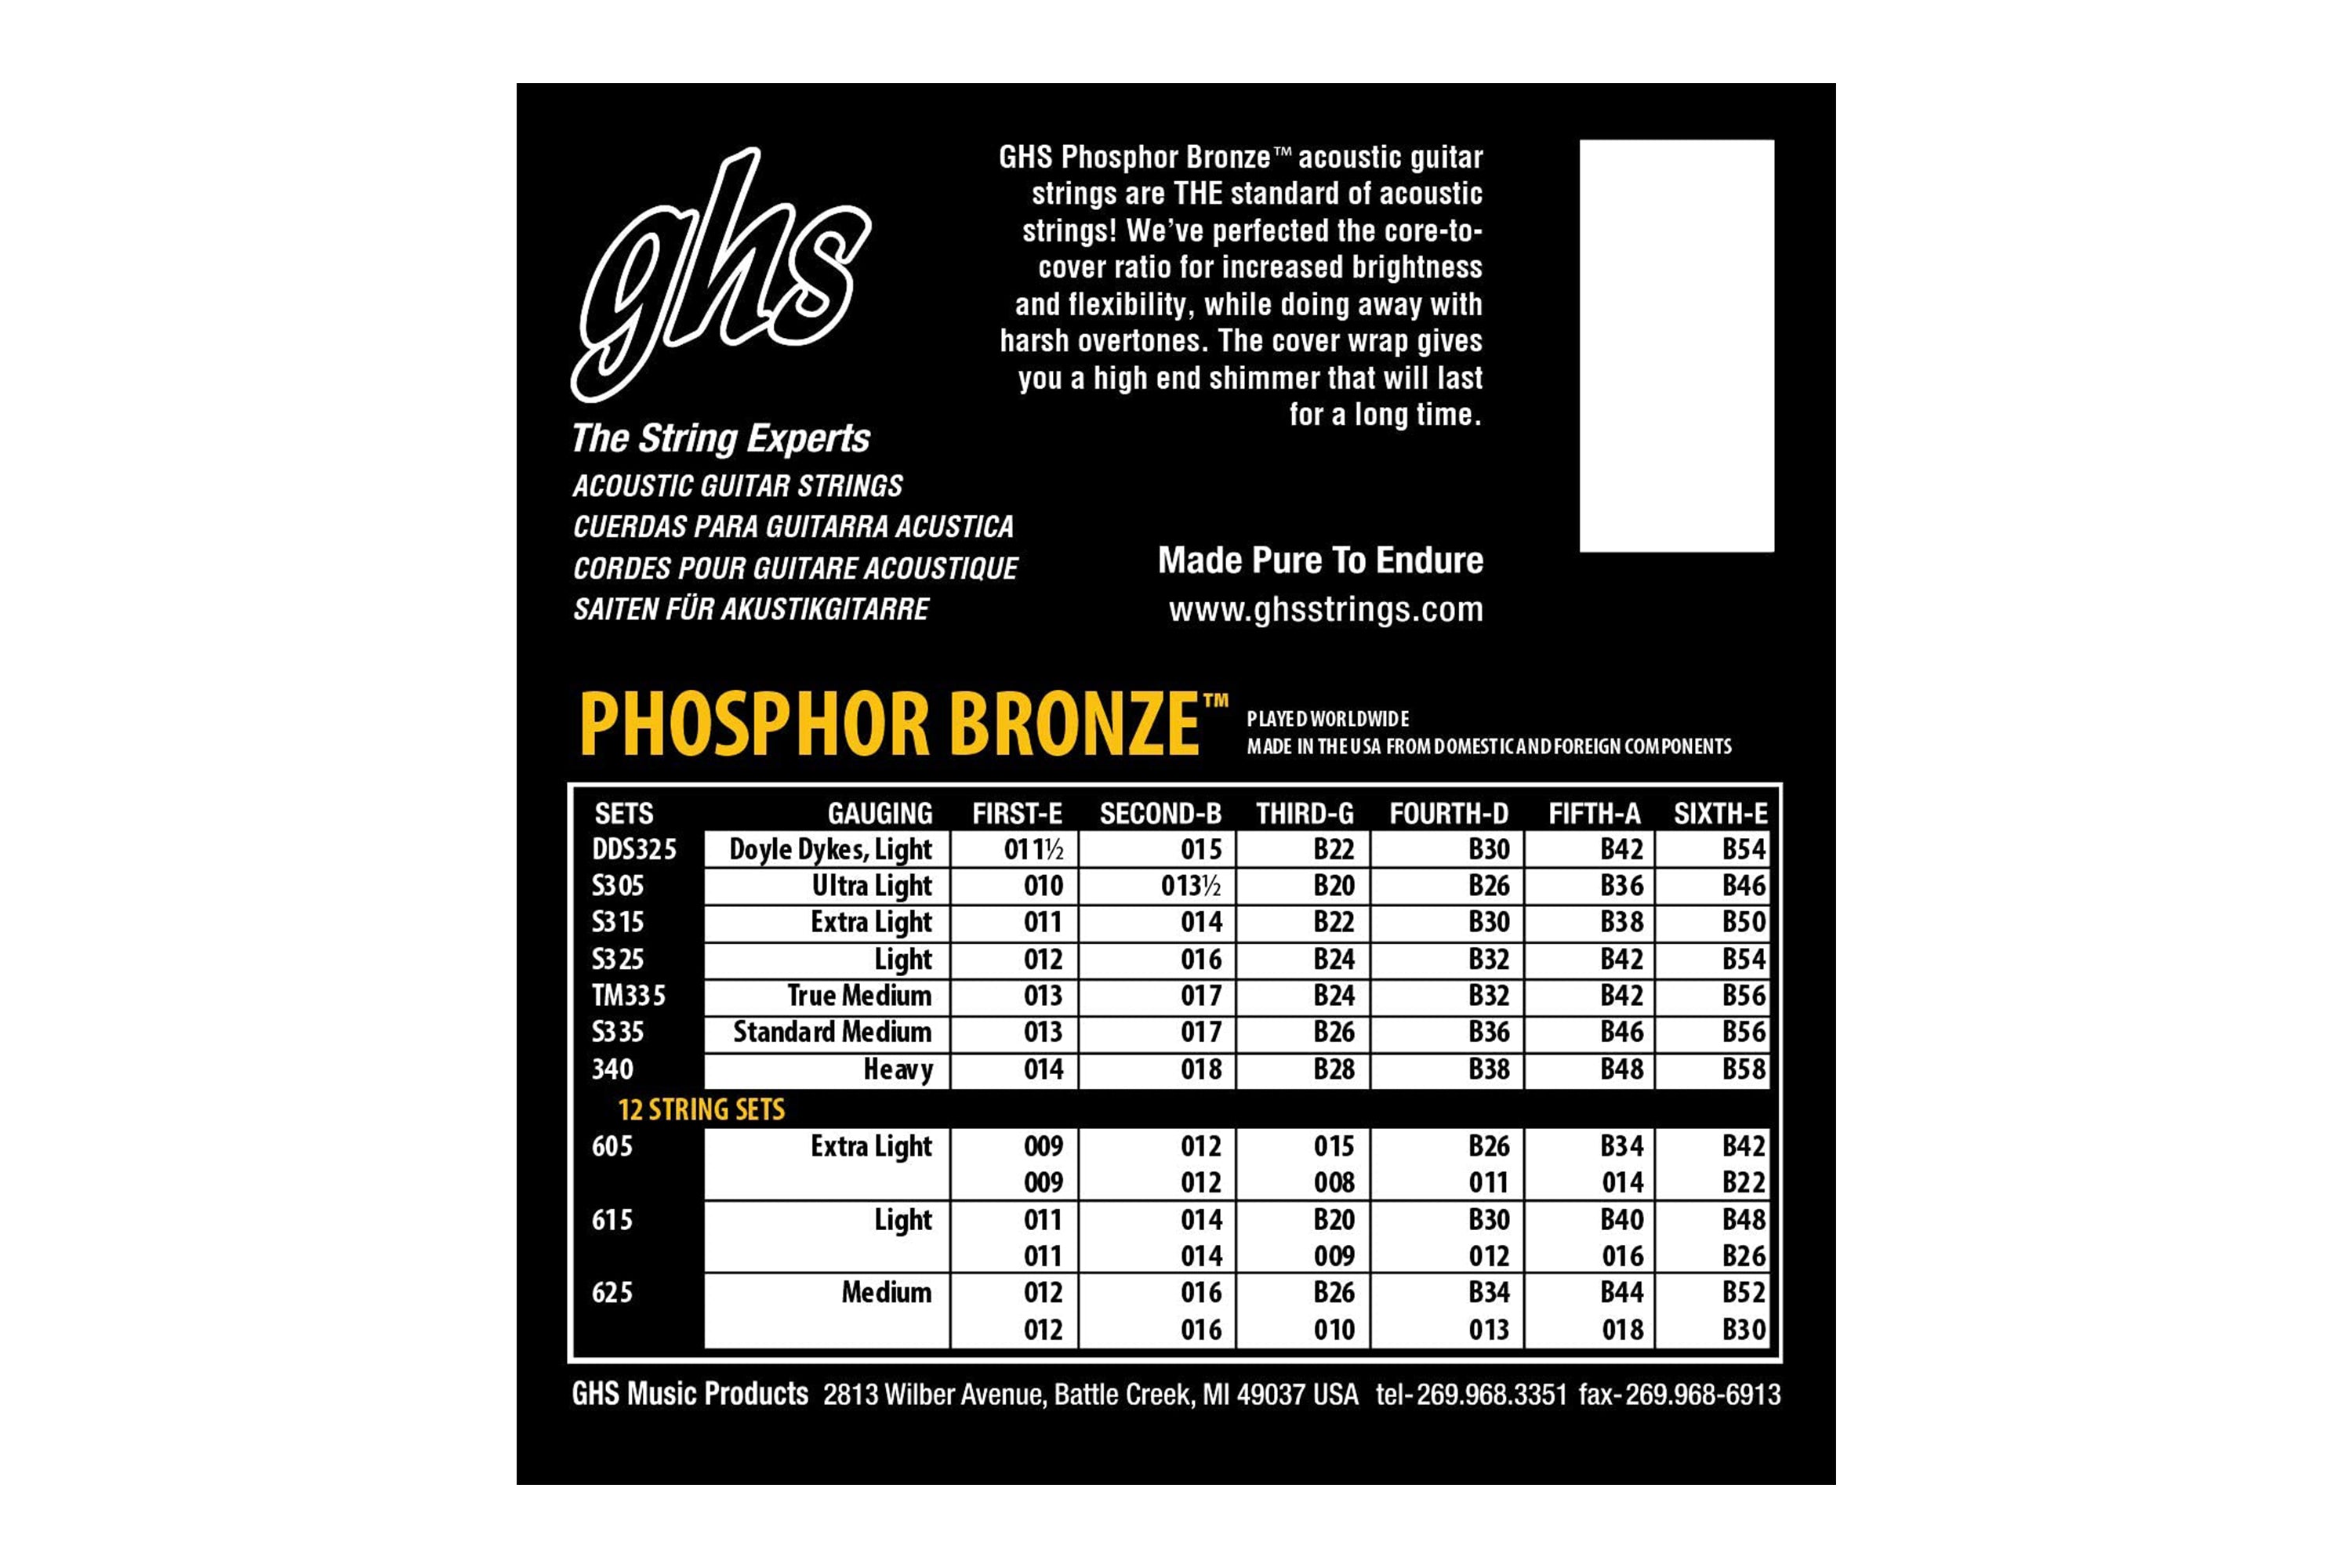 GHS S335 Phosphor Bronze Acoustic Guitar Strings - Medium .013-.056